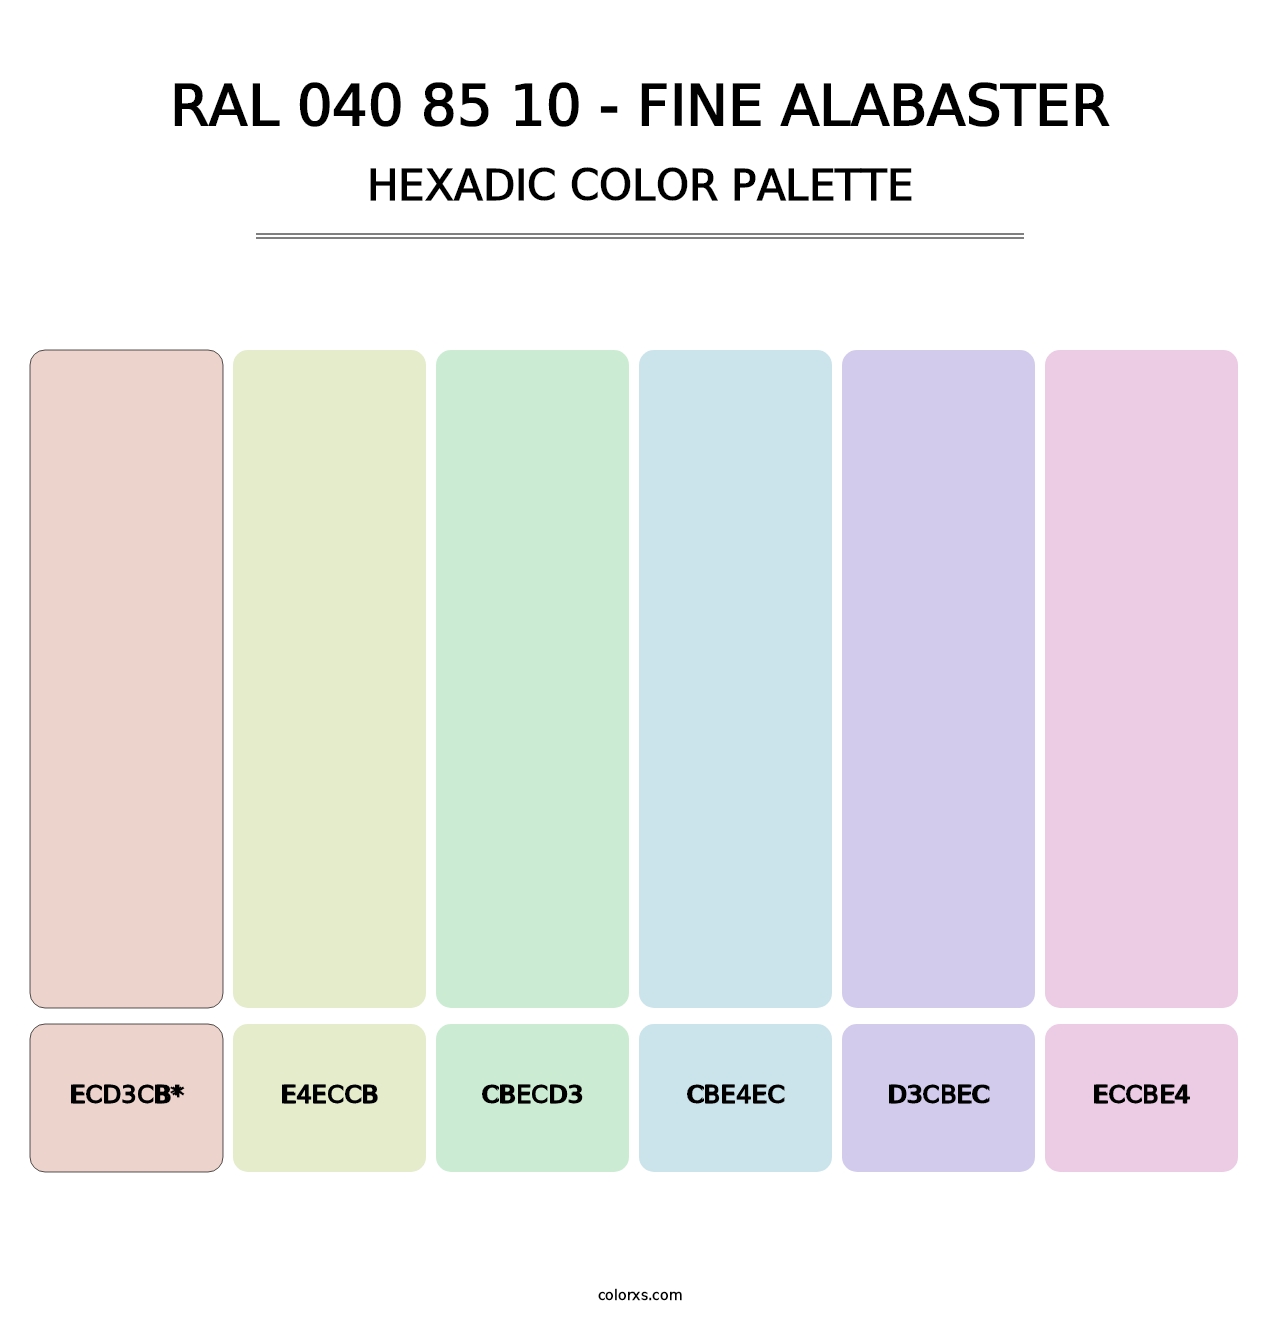 RAL 040 85 10 - Fine Alabaster - Hexadic Color Palette